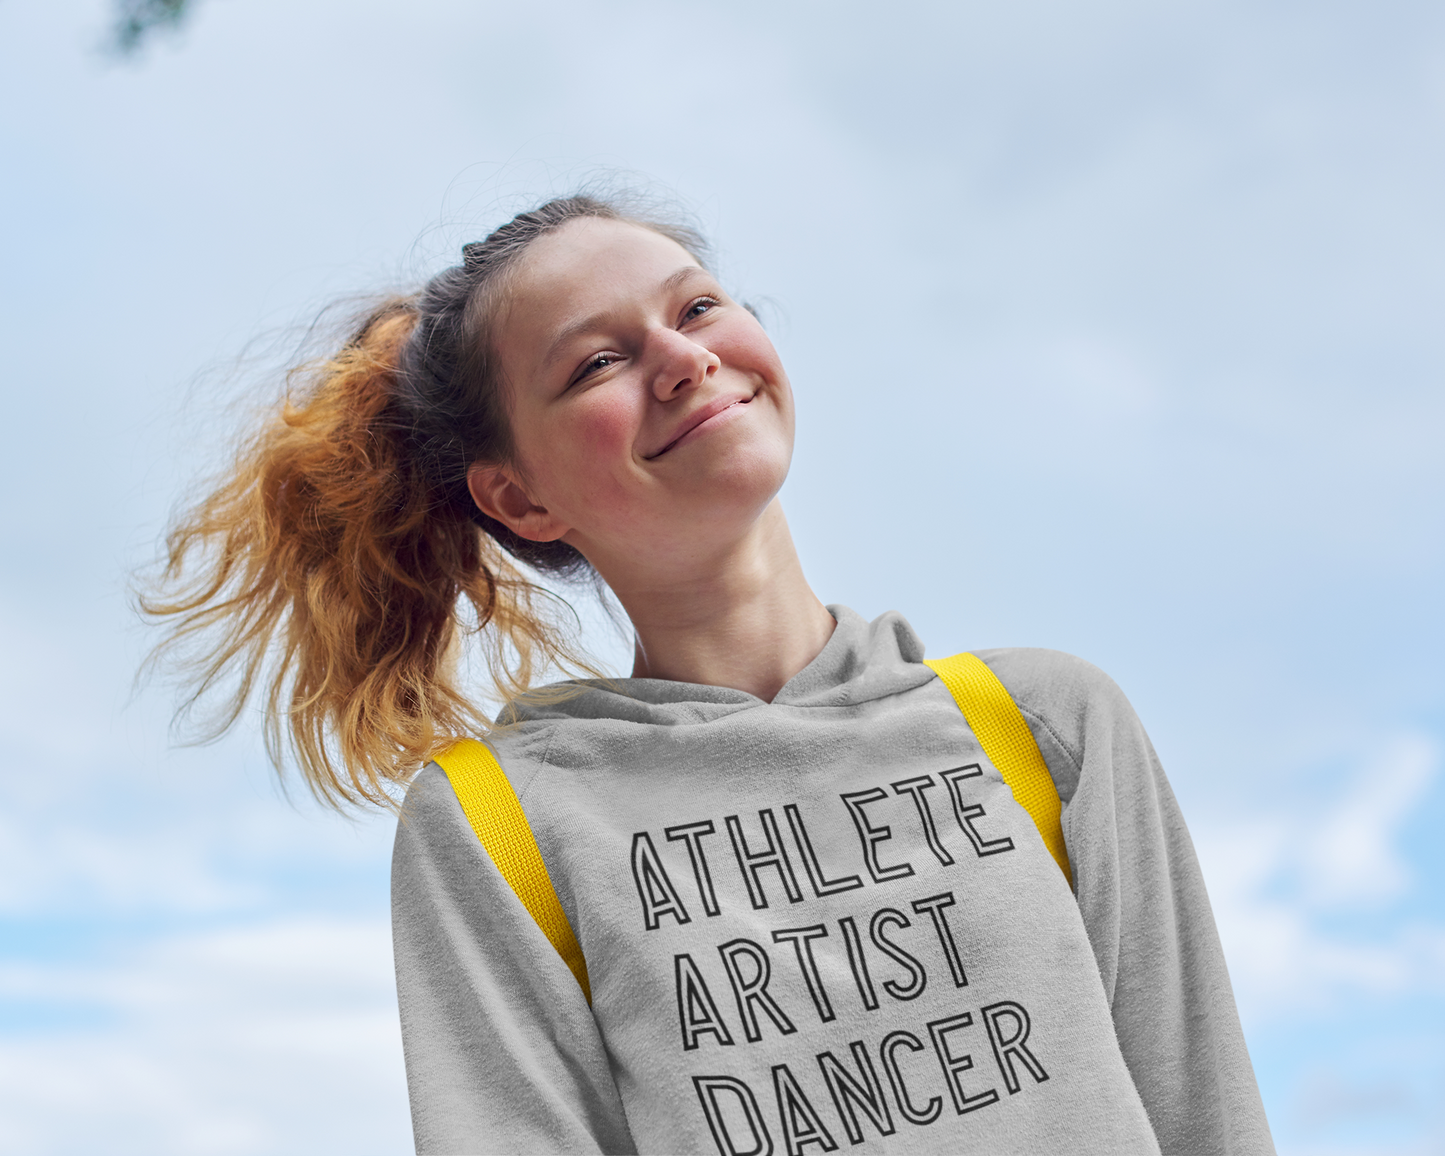 Athlete Artist Dancer SVG Digital Download Design File